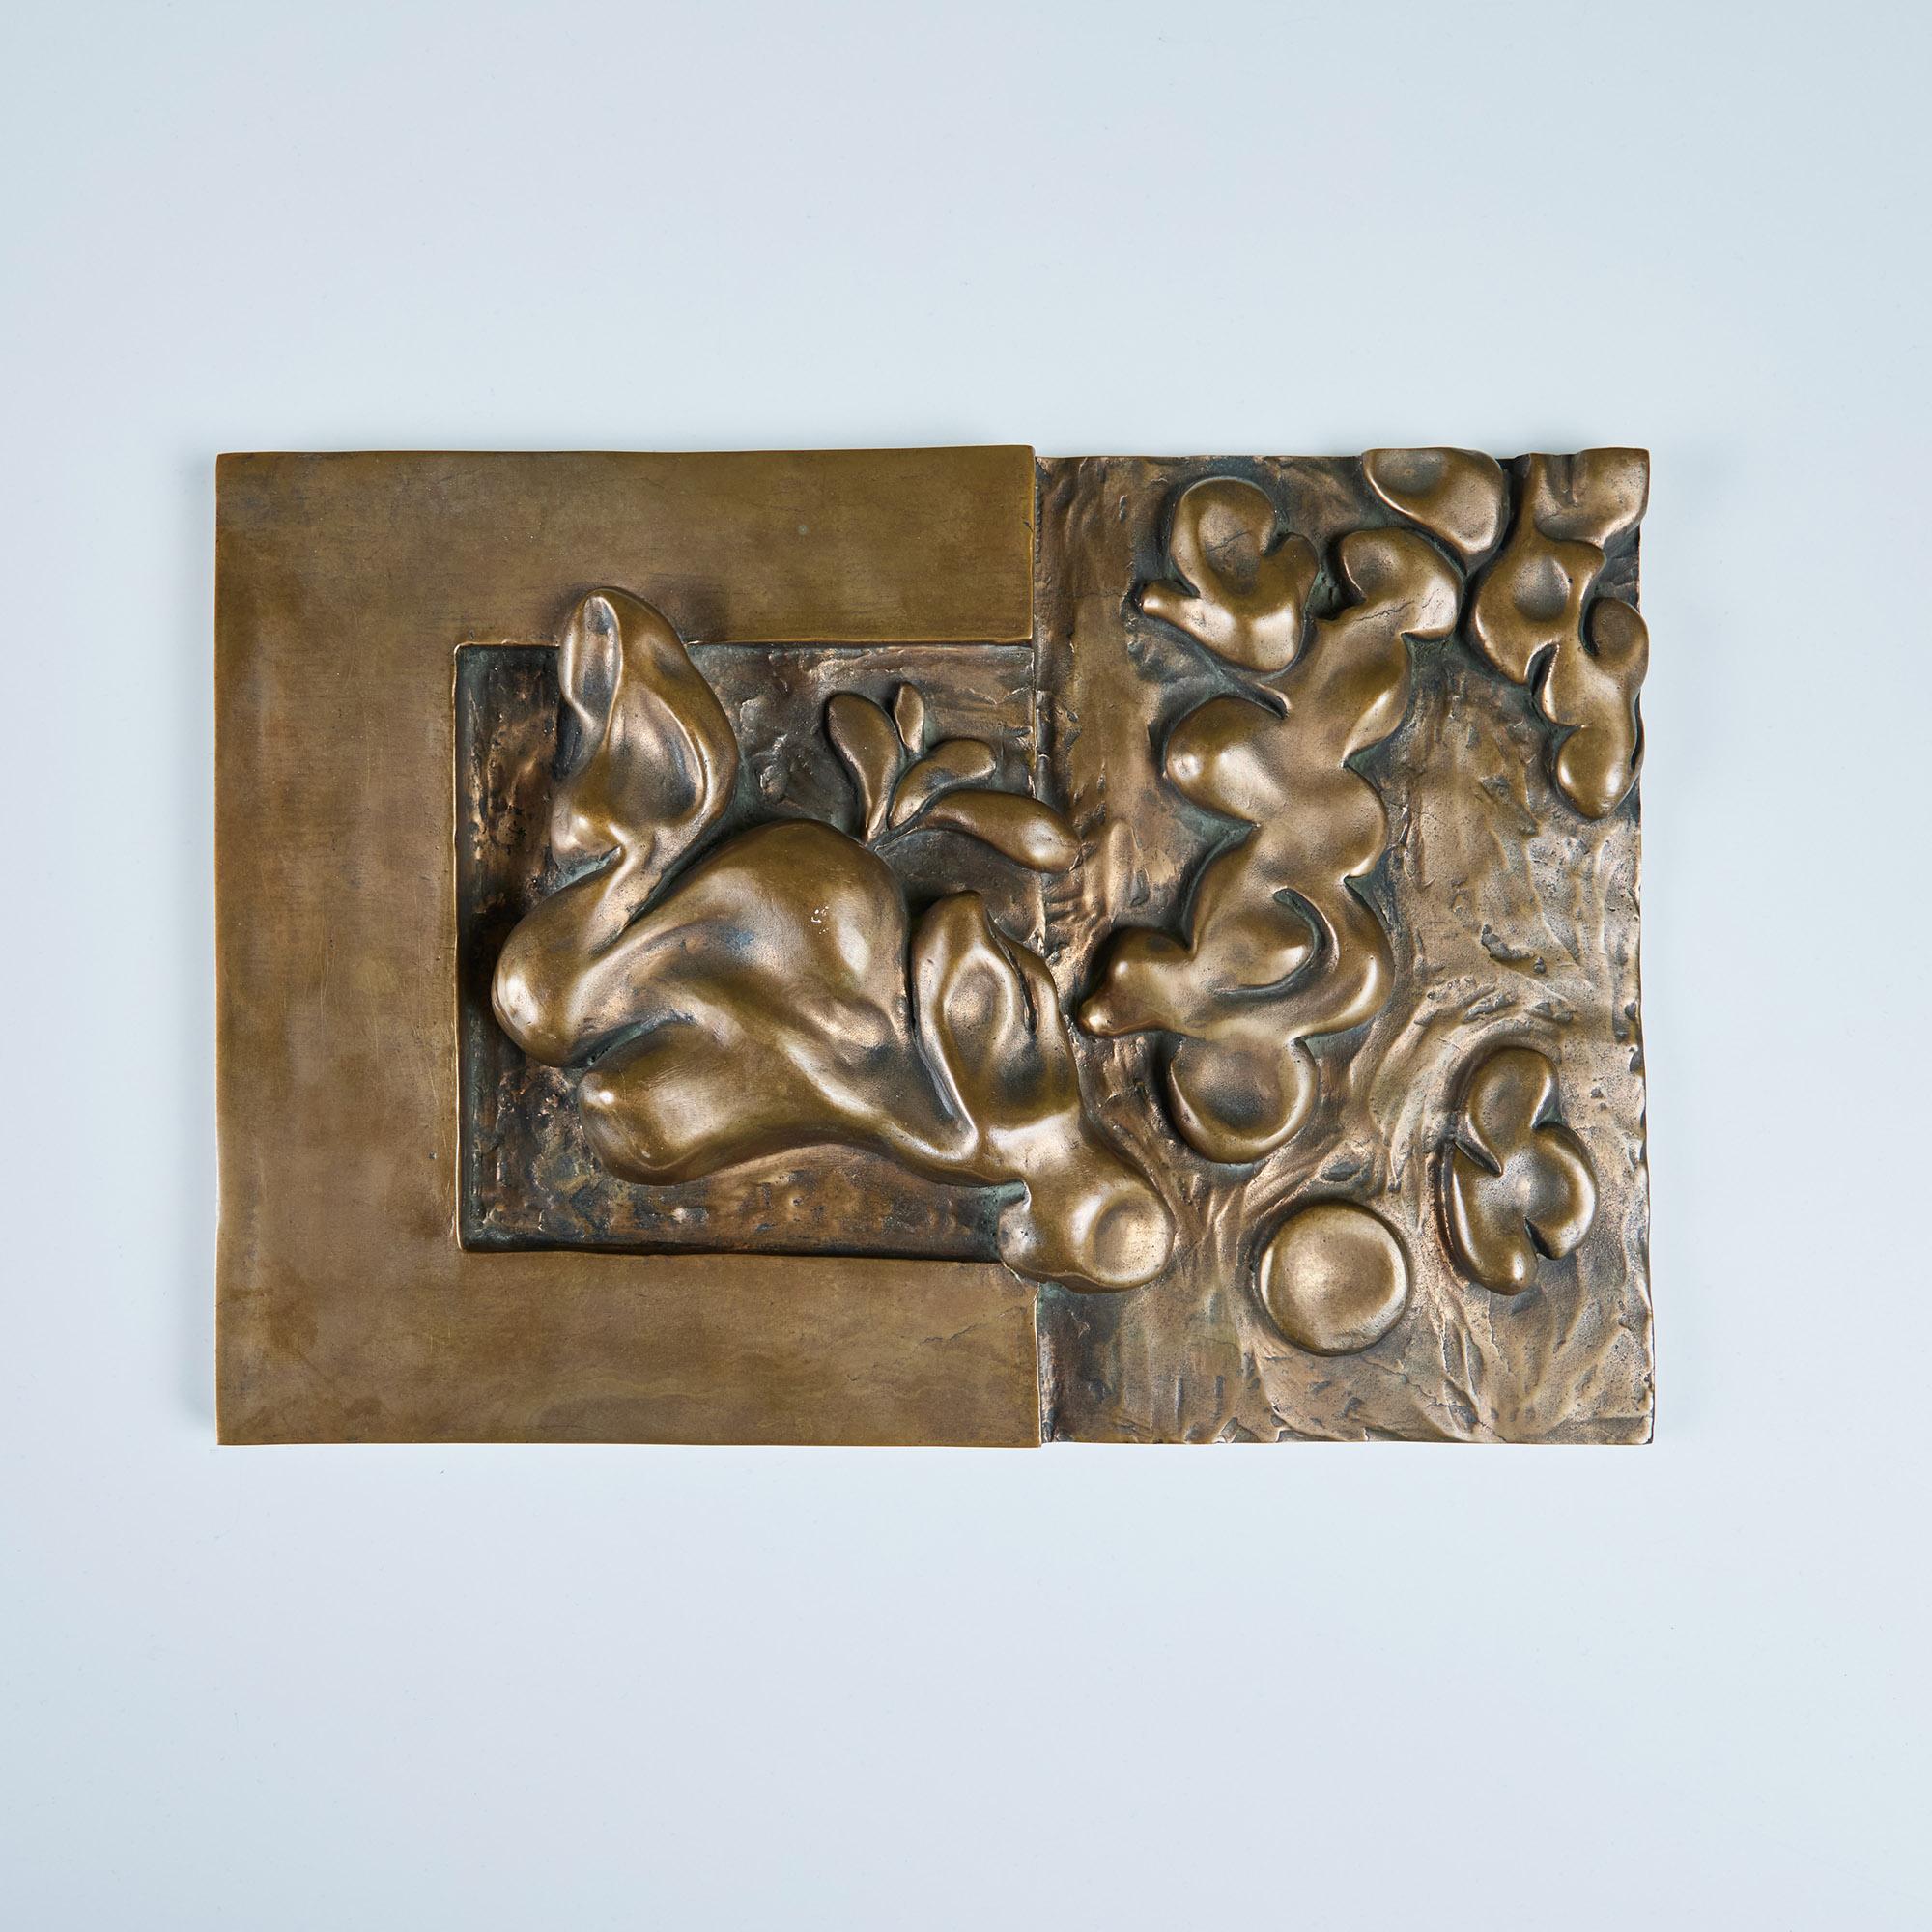 Abstrakte dekorative Bronzeplakette im Stil von Edgar Britton. Dieses gewichtige skulpturale Werk zeigt dreidimensionale Figuren. Ein lustiger Wandbehang oder eine Tischskulptur.

Abmessungen
13